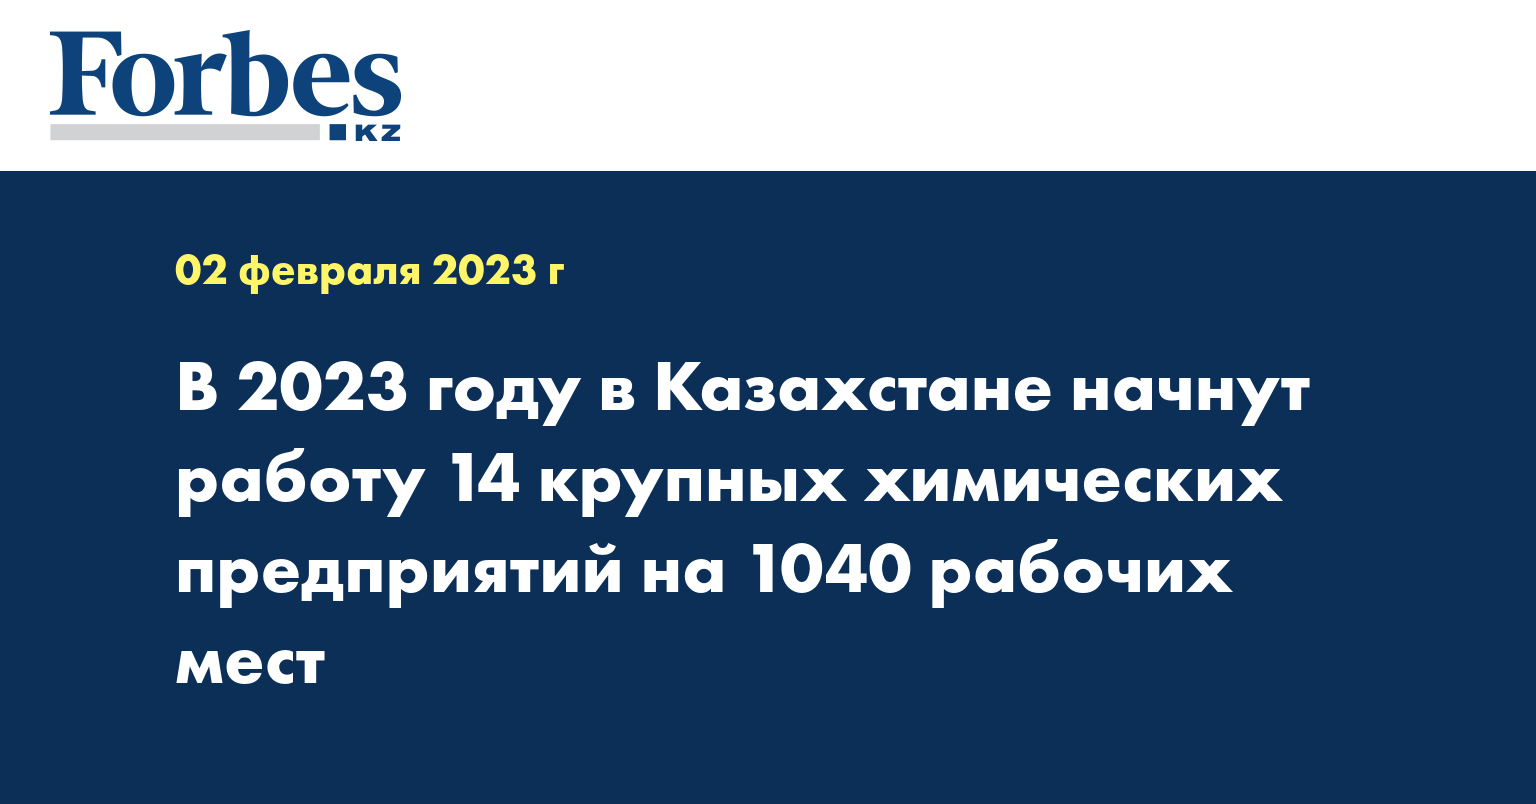 В 2023 году в Казахстане начнут работу 14 крупных химических предприятий на 1040 рабочих мест